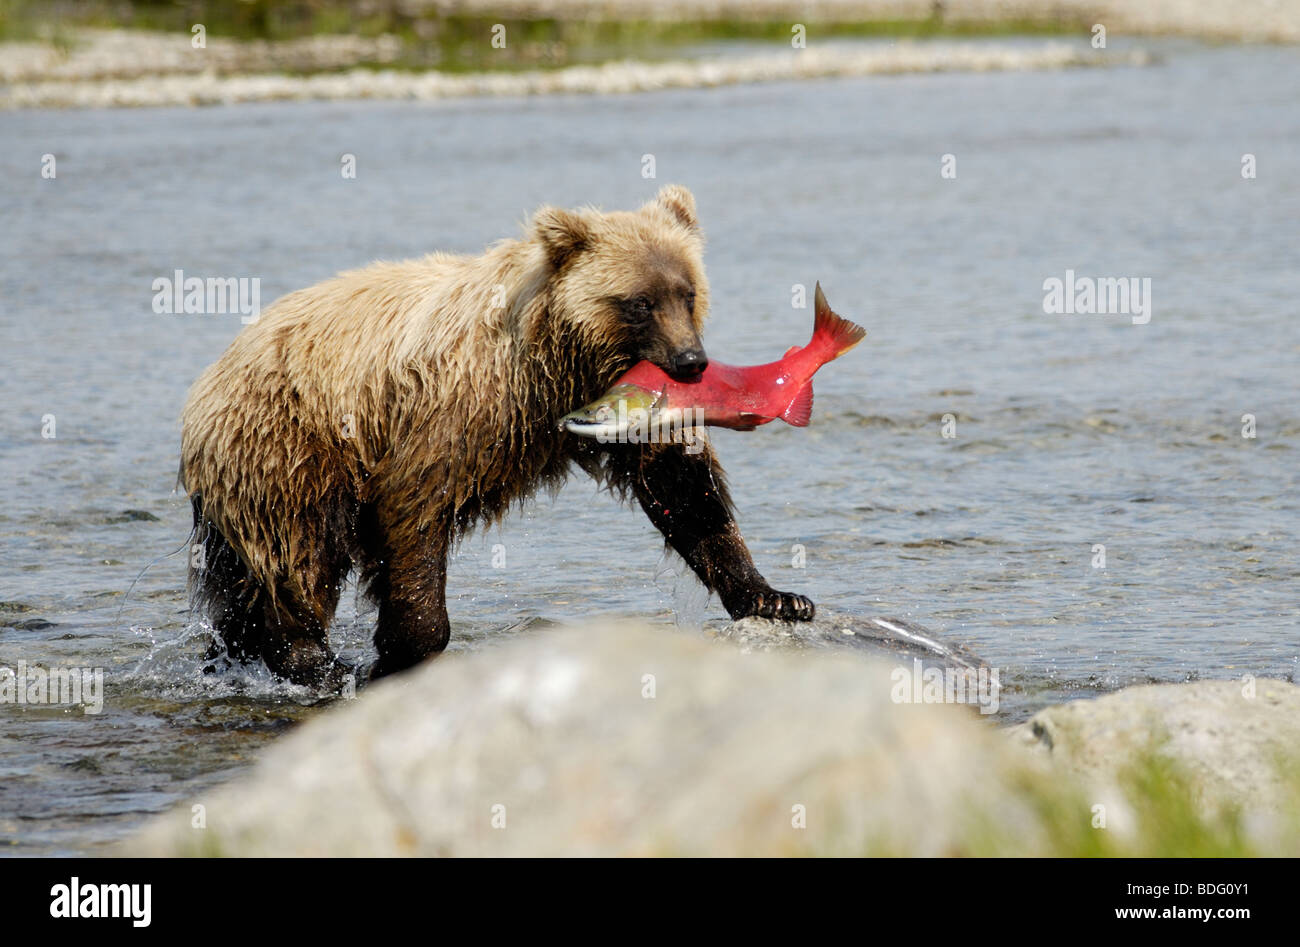 Grizzly bear avec le poisson (saumon) en bouche, Ursus arctos horribilis, Katmai National Park, Alaska Banque D'Images